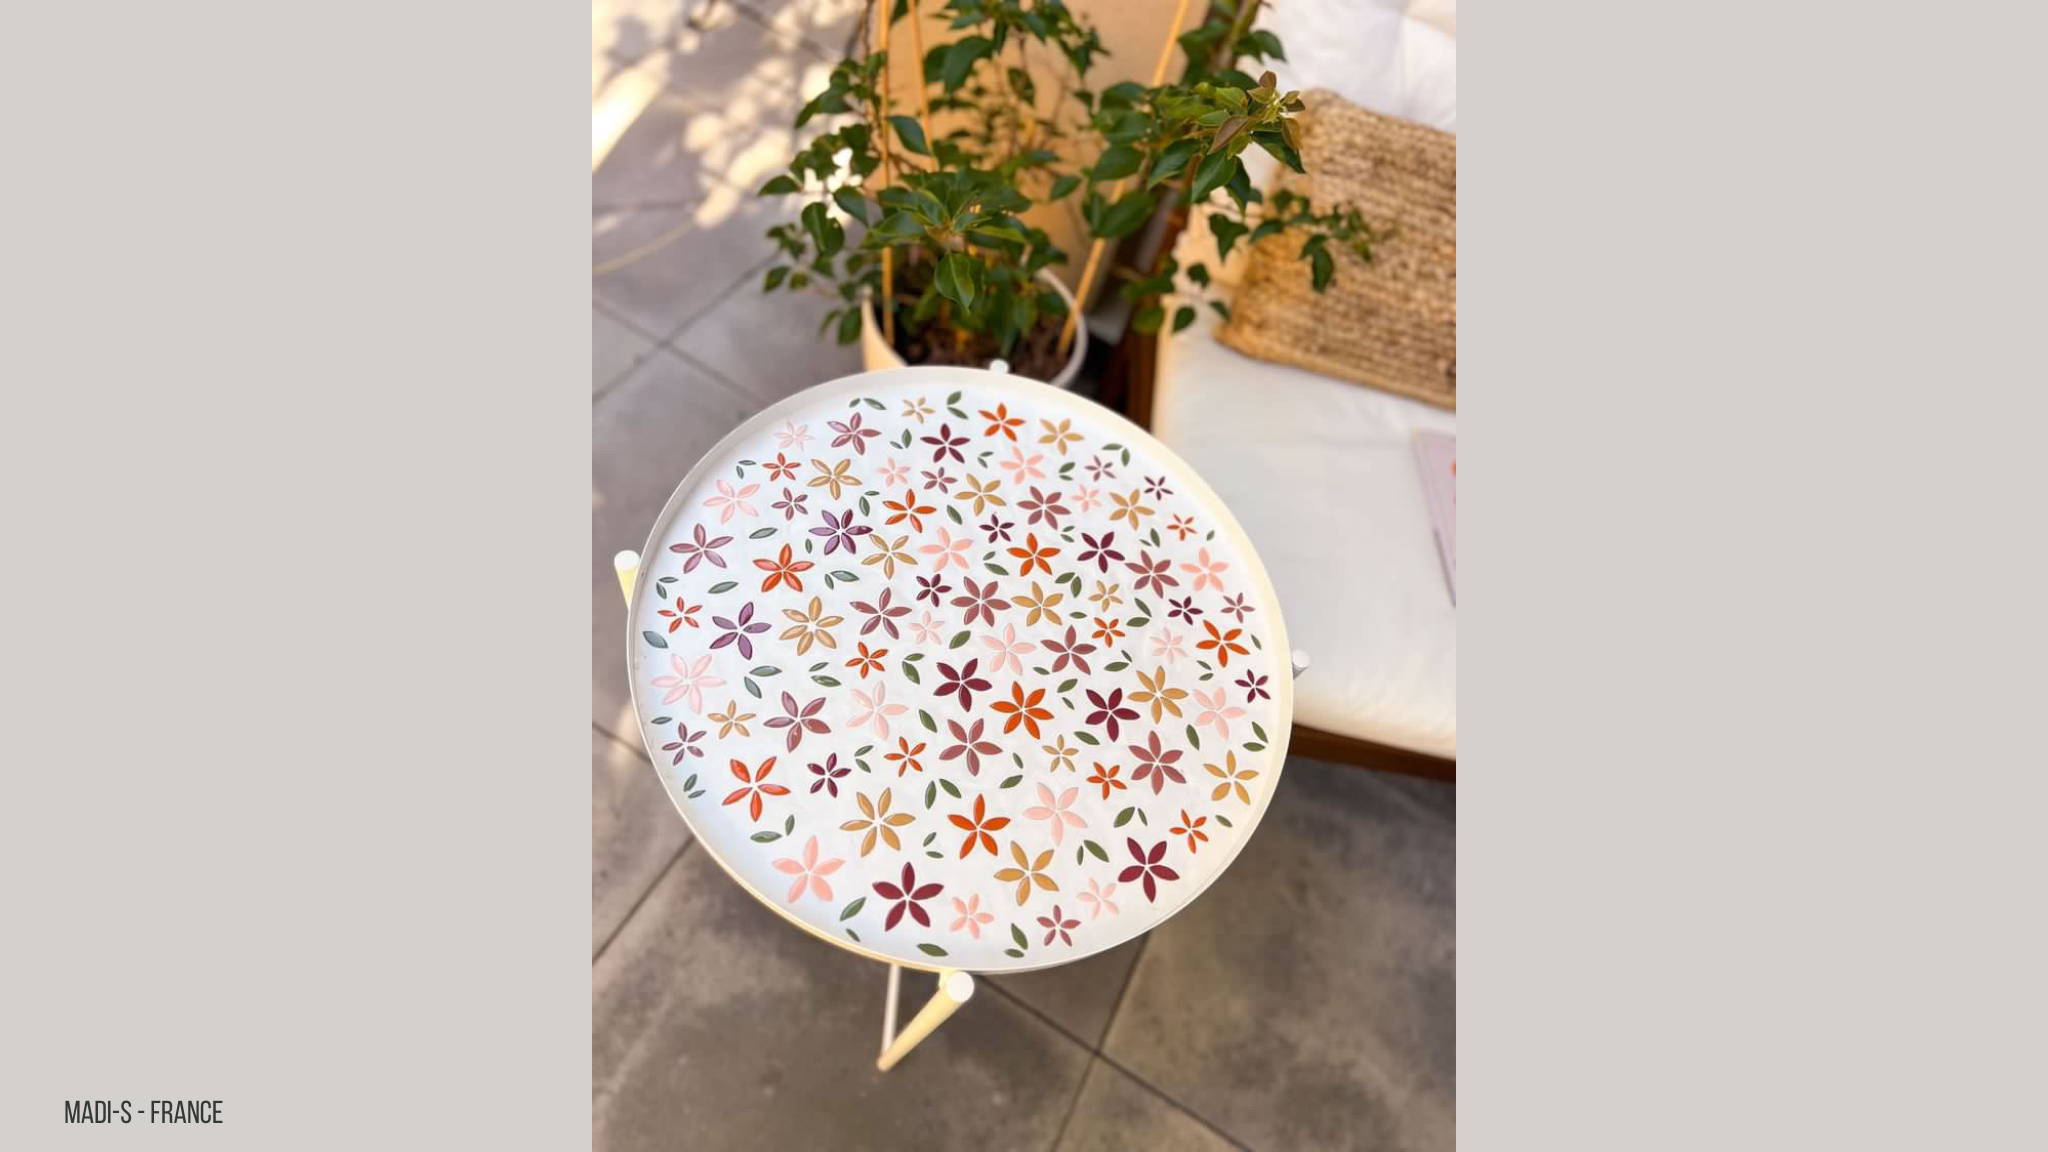 Rond tafeltje gemozaïekt met bloemblaadjes in verschillende kleuren met een witte voeg.